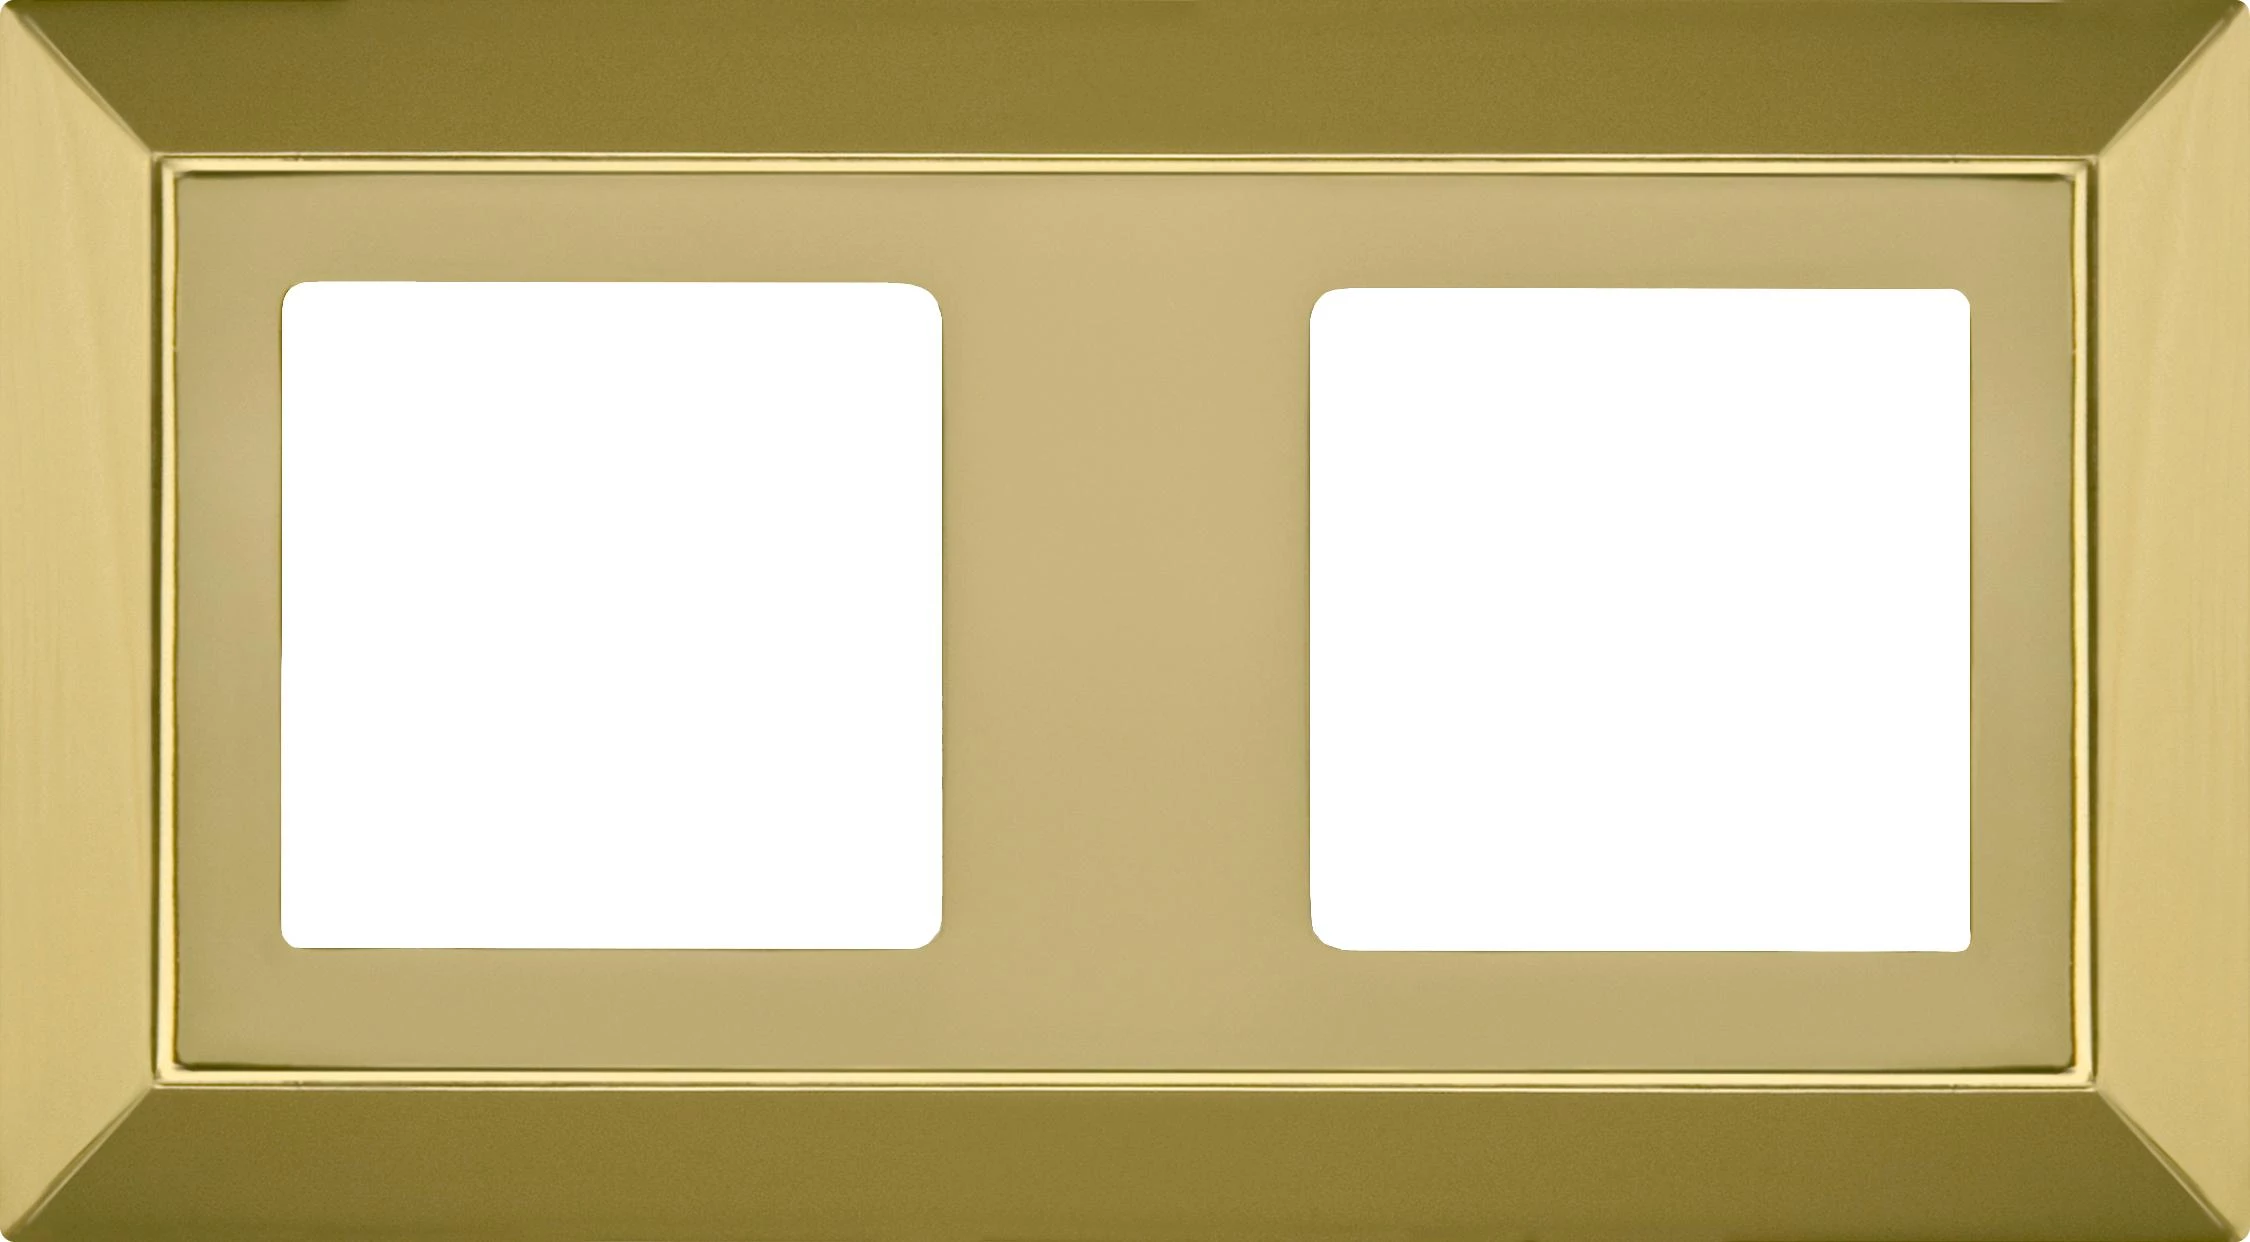  артикул FD01252OB название Рамка 2-ая (двойная), цвет Светлое золото, Barcelona, Fede